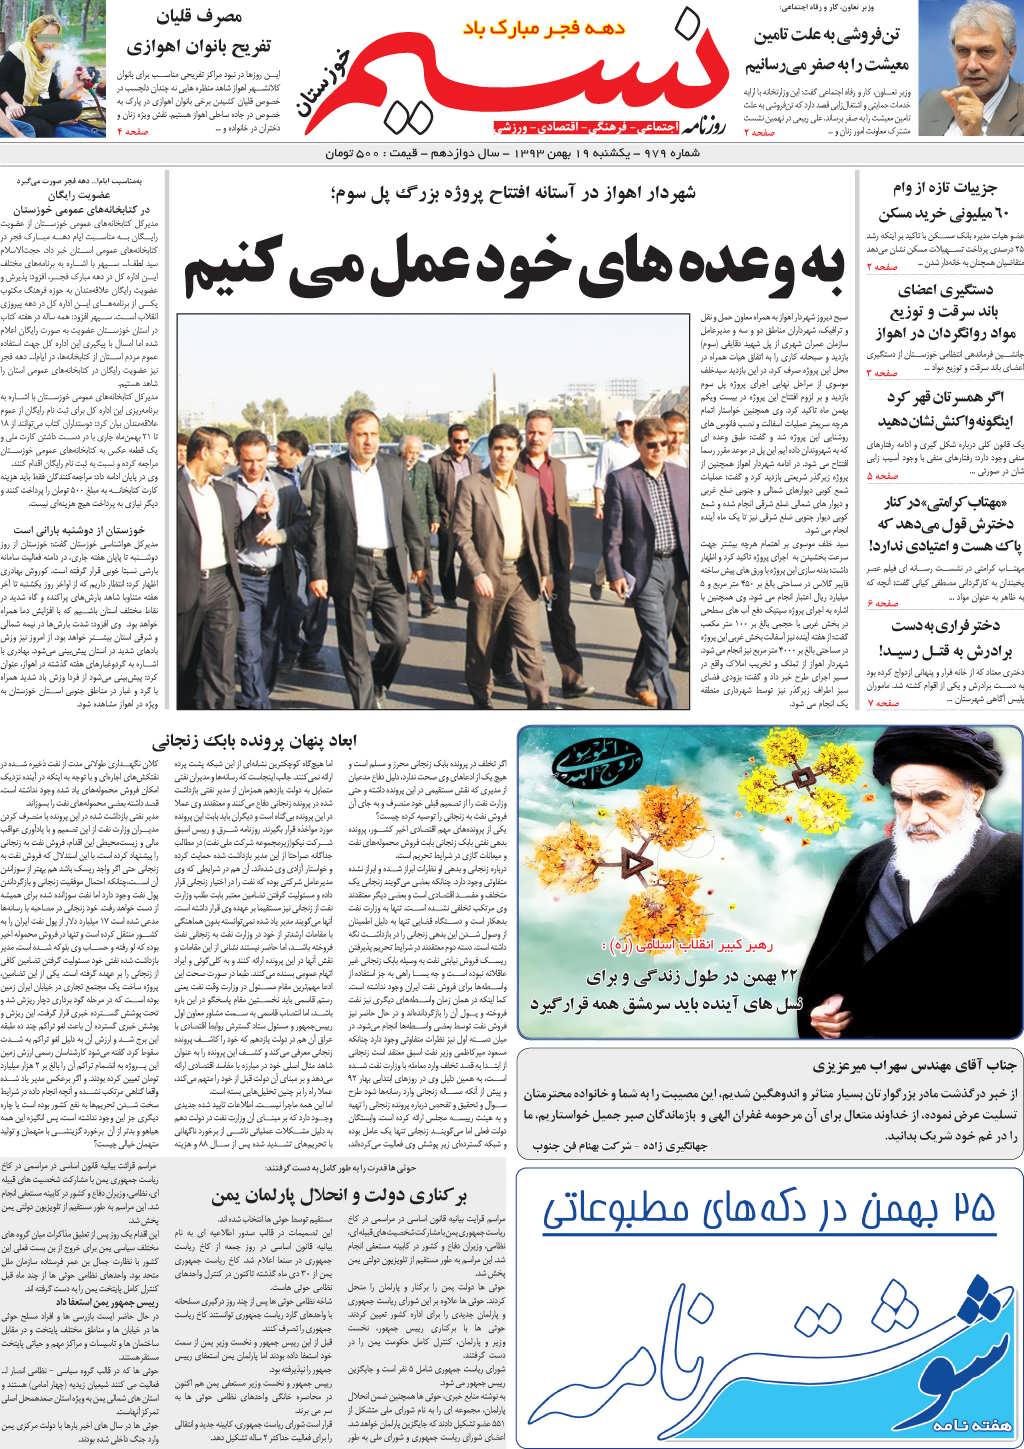 صفحه اصلی روزنامه نسیم شماره 979